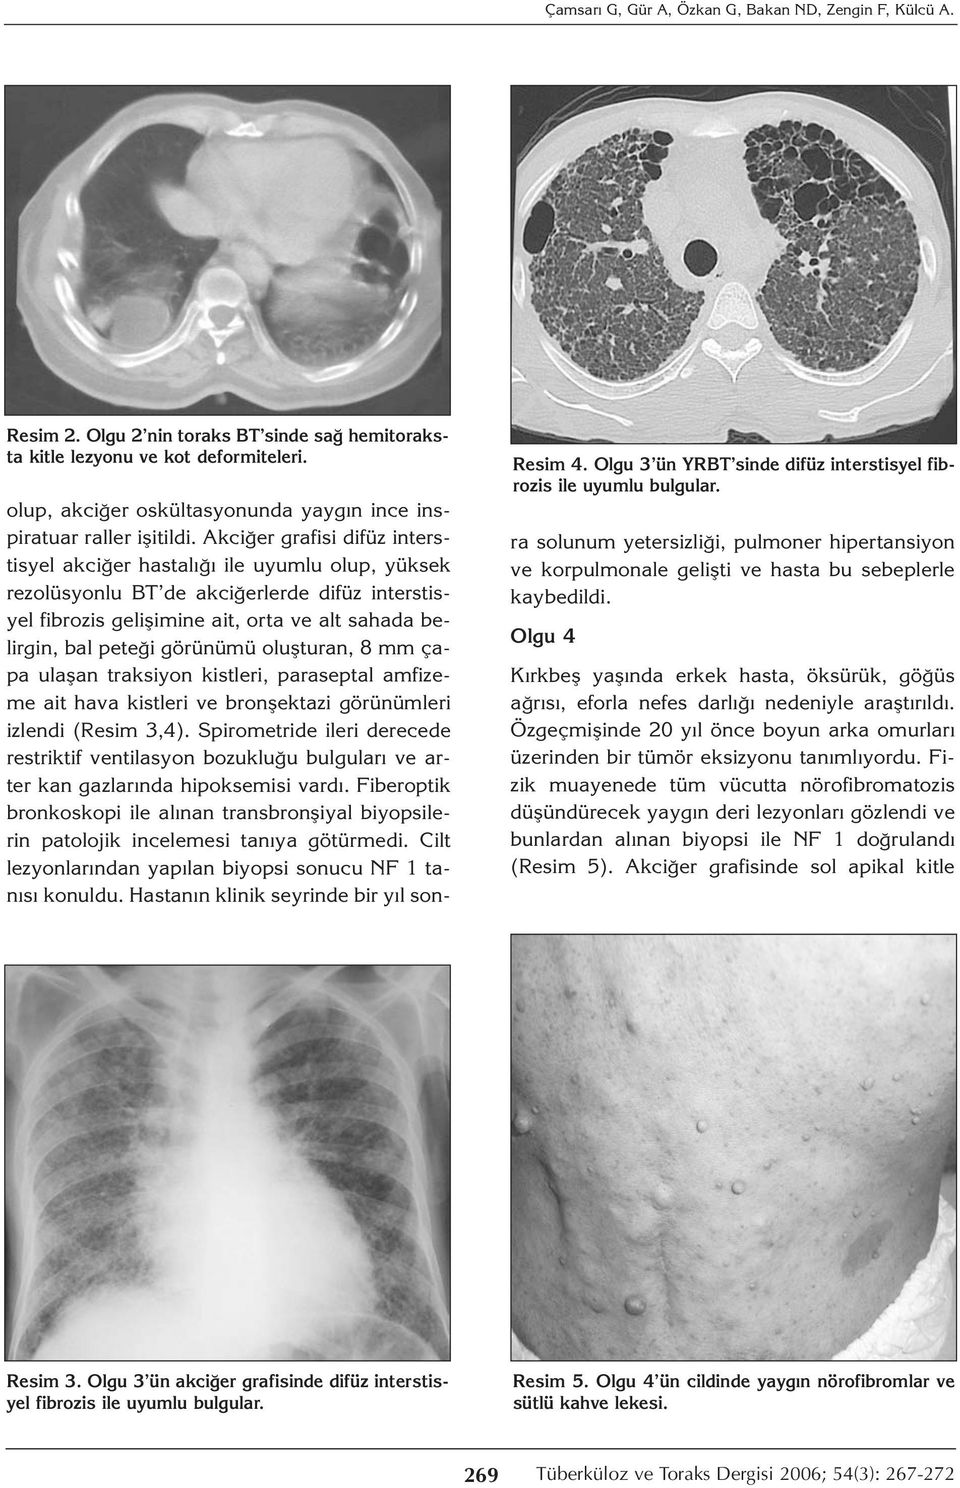 Akciğer grafisi difüz interstisyel akciğer hastalığı ile uyumlu olup, yüksek rezolüsyonlu BT de akciğerlerde difüz interstisyel fibrozis gelişimine ait, orta ve alt sahada belirgin, bal peteği